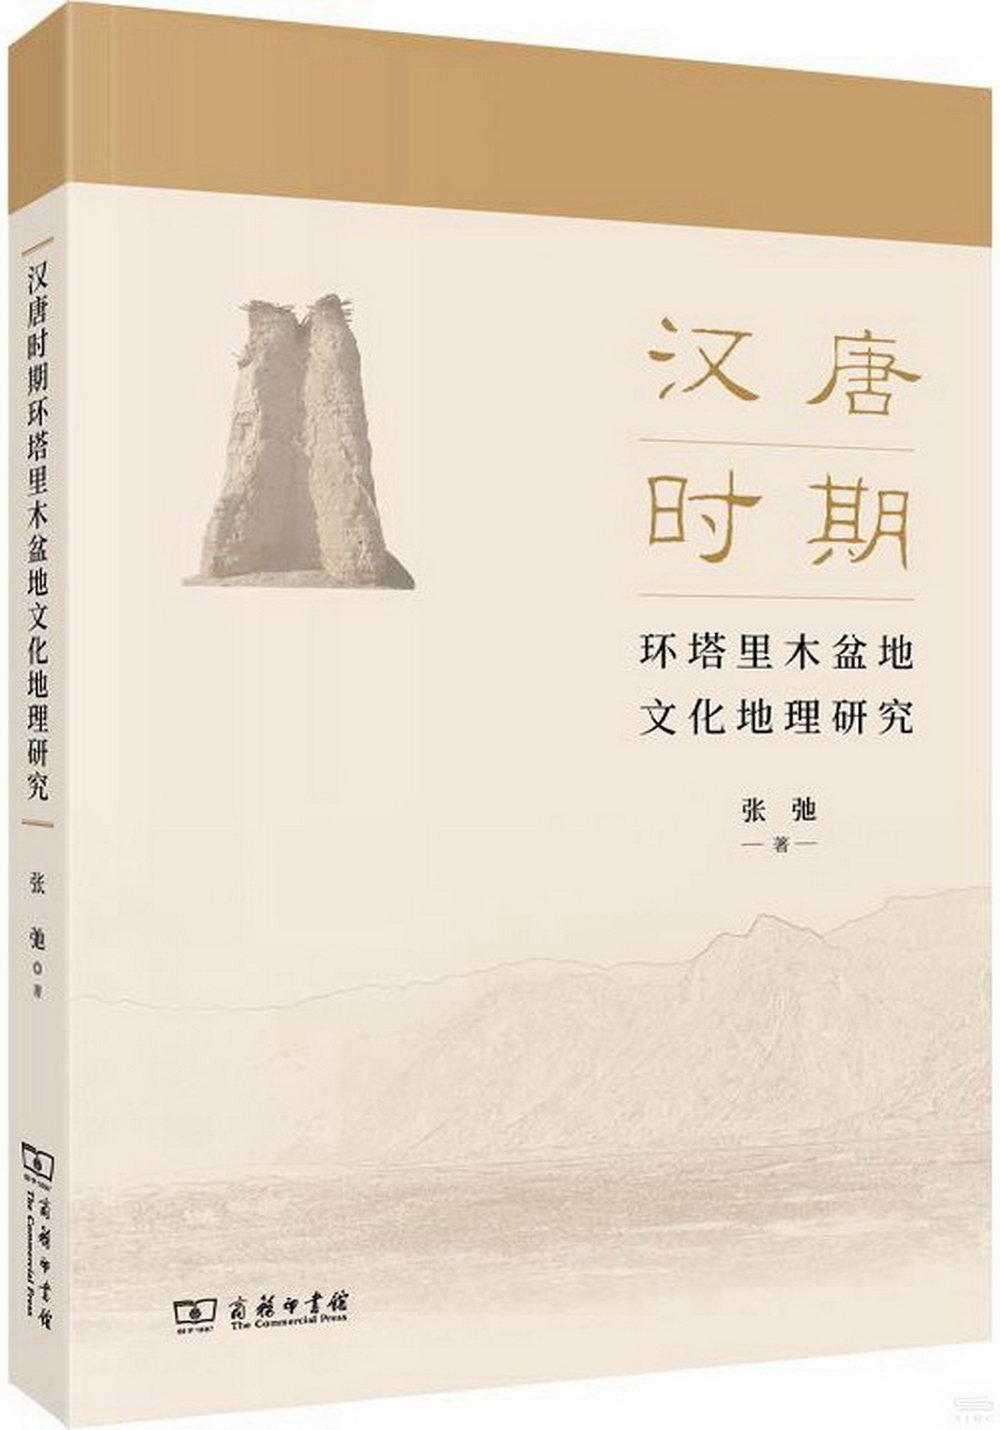 漢唐時期環塔里木盆地文化地理研究